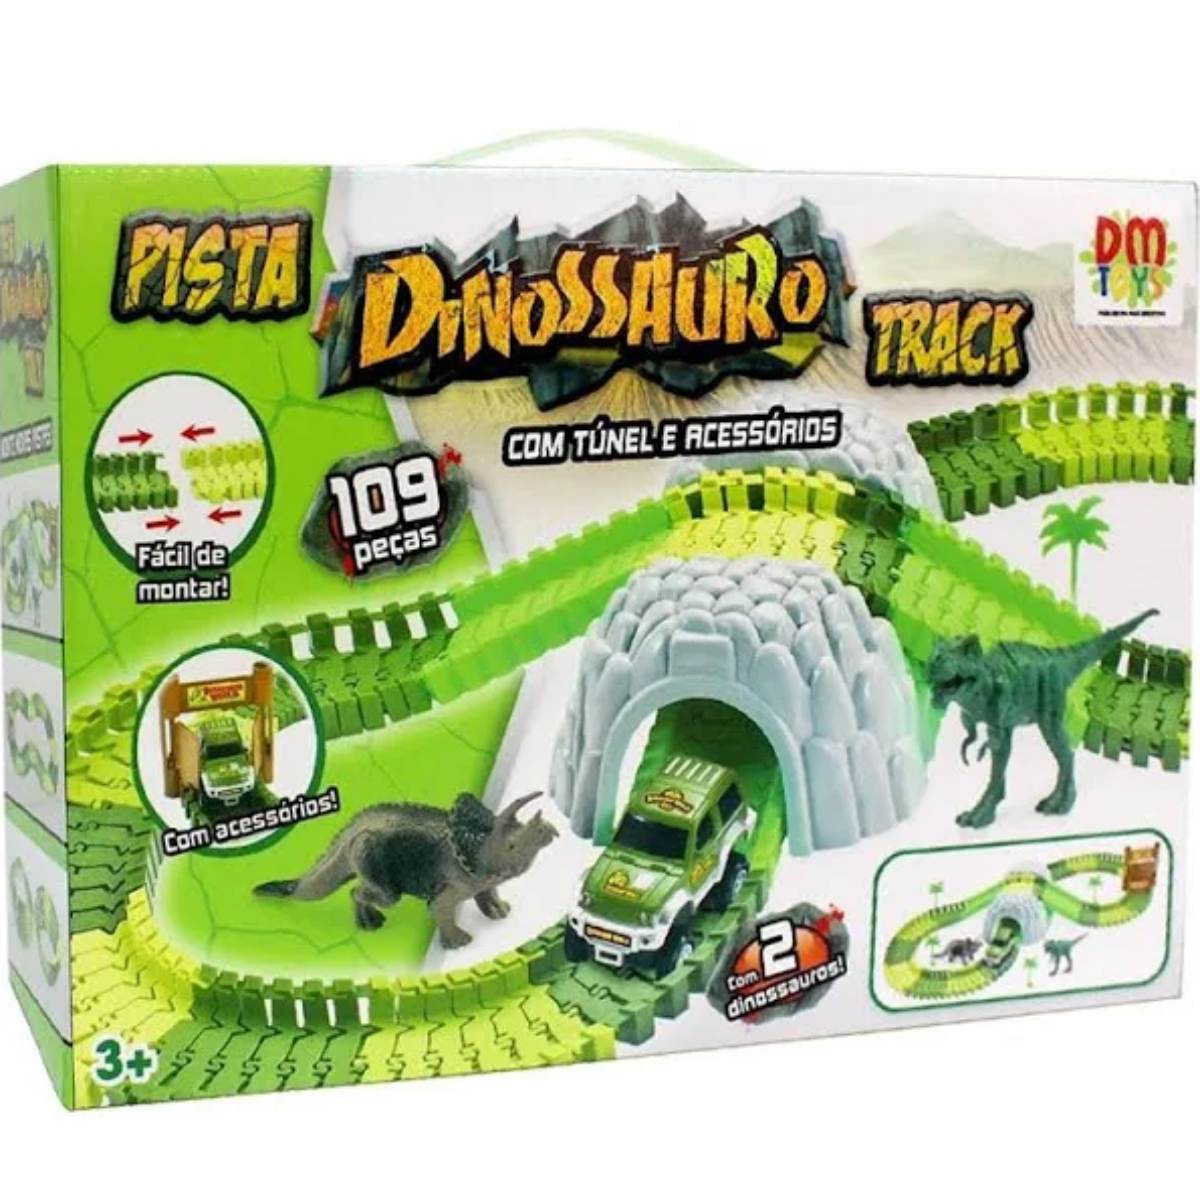 Pista Dinossauro Track | Com Túnel e Acessórios 109 peças